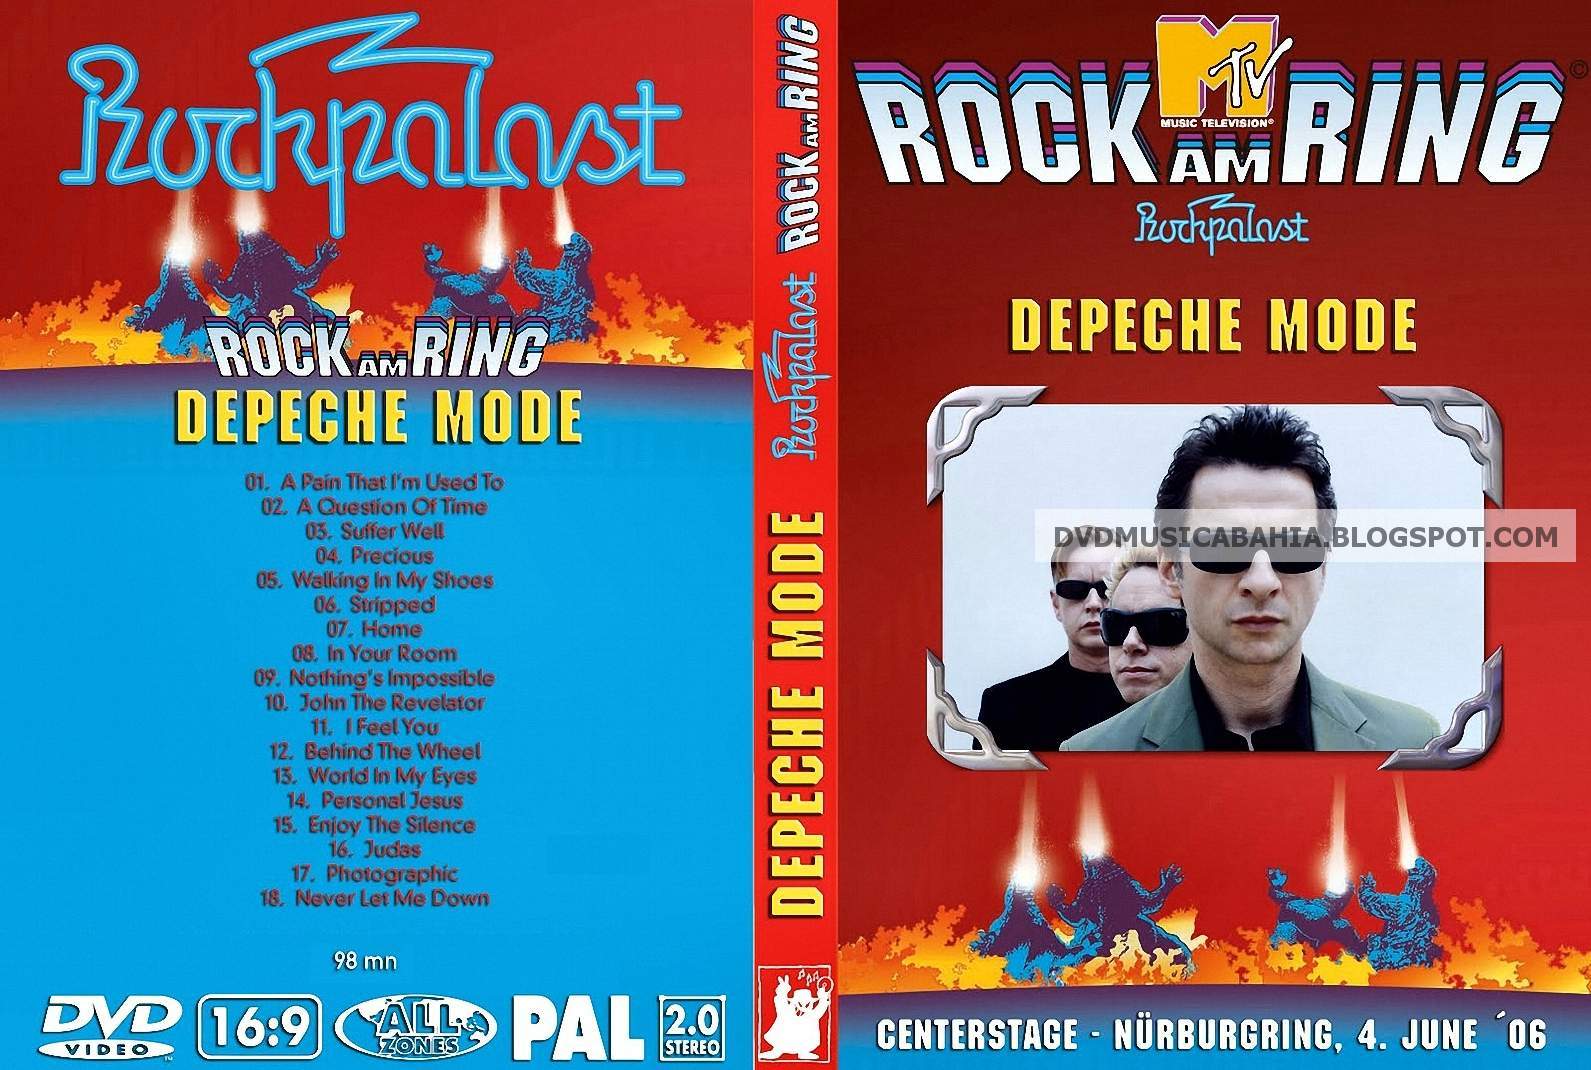 http://3.bp.blogspot.com/-J_T0ABosjZg/TWLyO4zvIXI/AAAAAAAABfw/4_UWhlVXWO0/s1600/Depeche+Mode+-+Live+At+Rock+Am+Ring+2006+cover.jpg